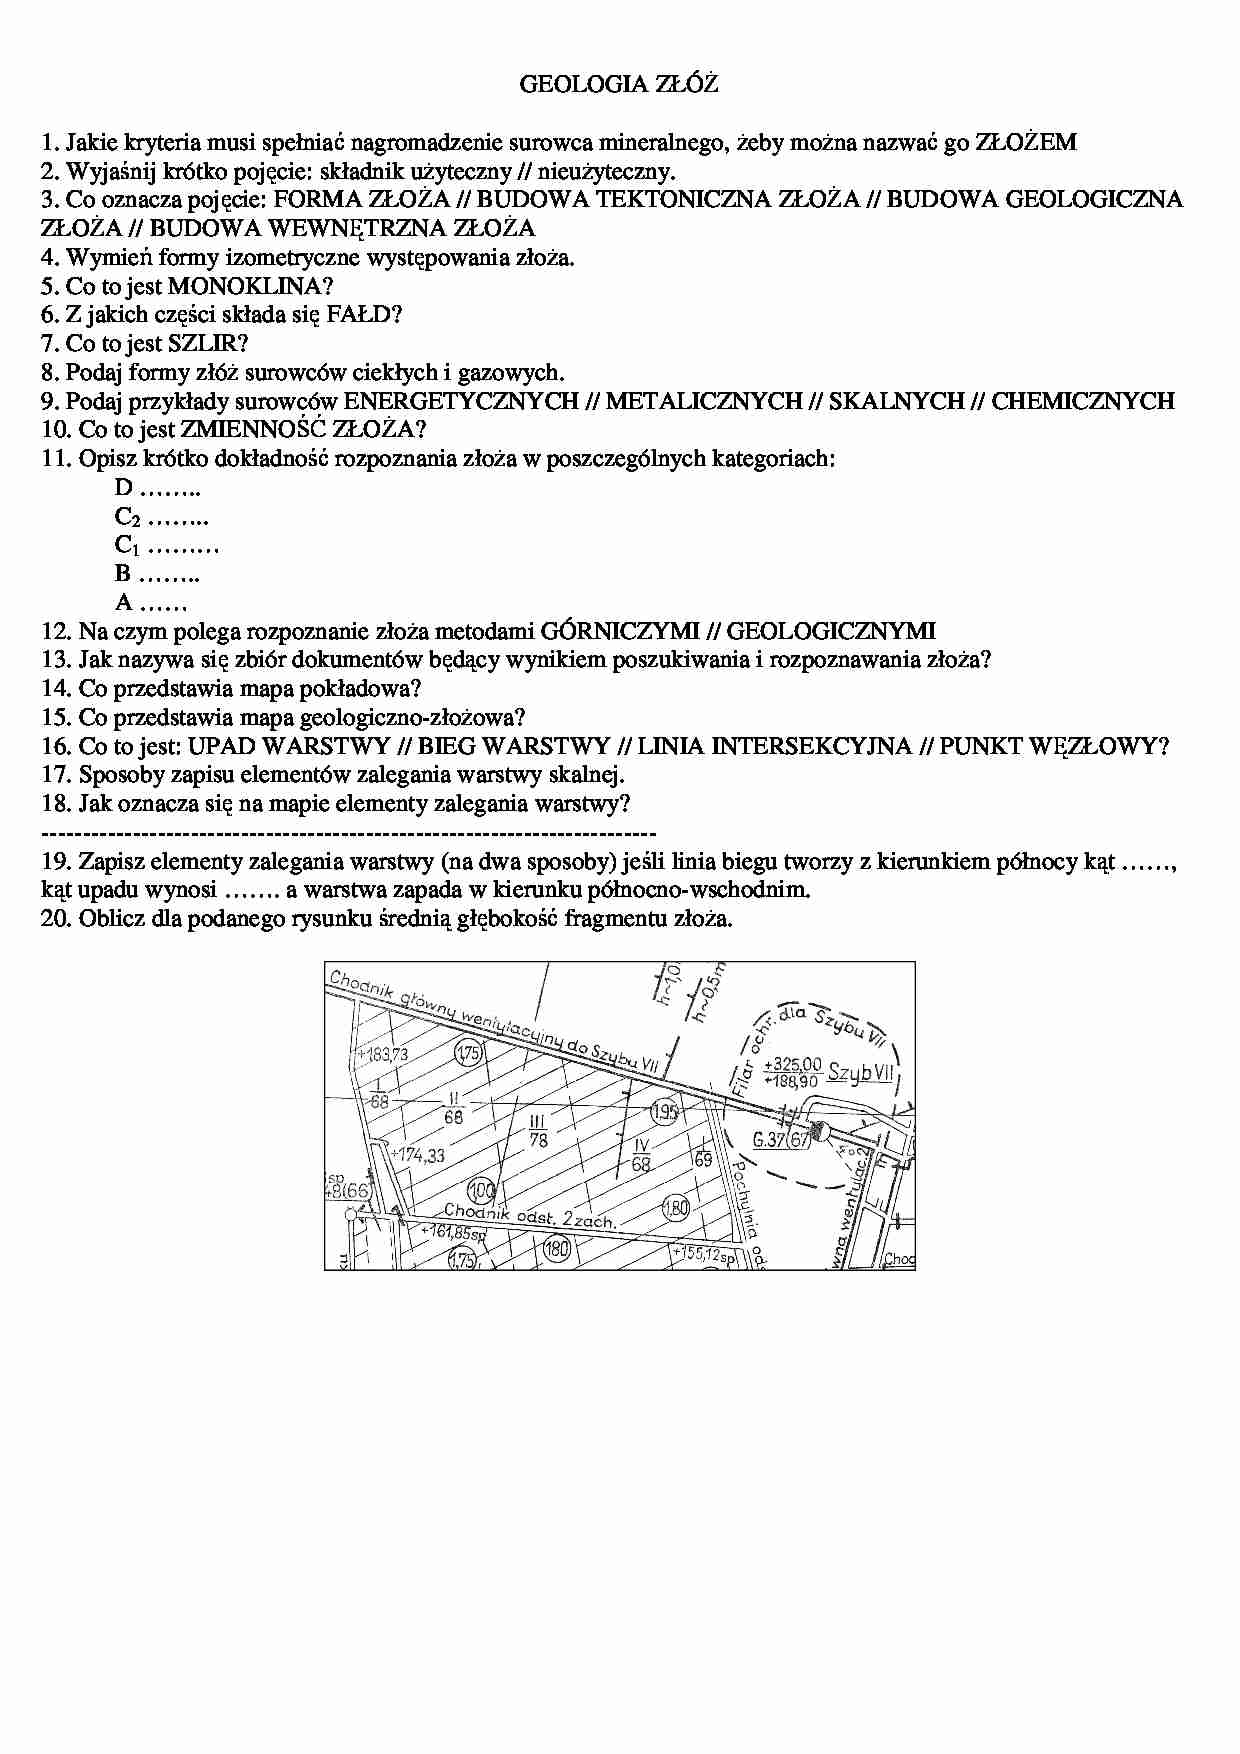 Geologia złóż - przykładowe pytania  - strona 1